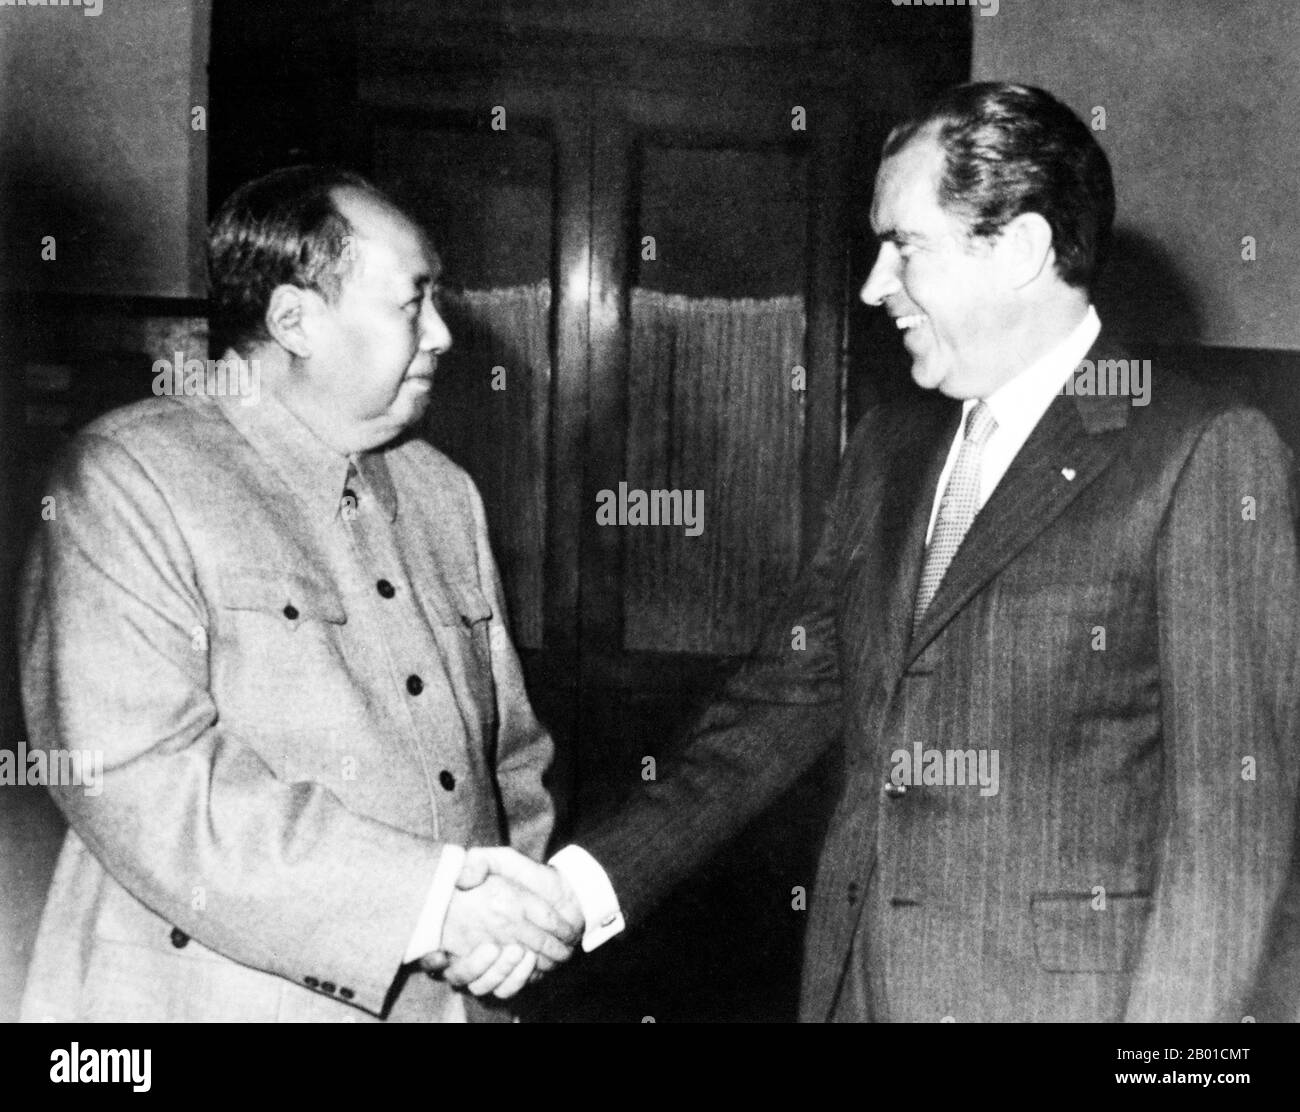 Chine/Etats-Unis: Le Président Mao Tsé-toung (26 décembre 1893 - 9 septembre 1976) se serre la main avec le Président Richard Nixon (9 janvier 1913 - 22 avril 1994), Beijing, 21 février 1972. La visite du président américain Richard Nixon en Chine en 1972 a constitué une étape importante dans la normalisation formelle des relations entre les États-Unis et la République populaire de Chine. Entre 21-28 février 1972, Nixon s'est rendu à Pékin, Hangzhou et Shanghai. Presque dès son arrivée dans la capitale chinoise, le président fut convoqué pour une rencontre rapide avec le président Mao qui, inconnu des Américains, était malade depuis des jours. Banque D'Images